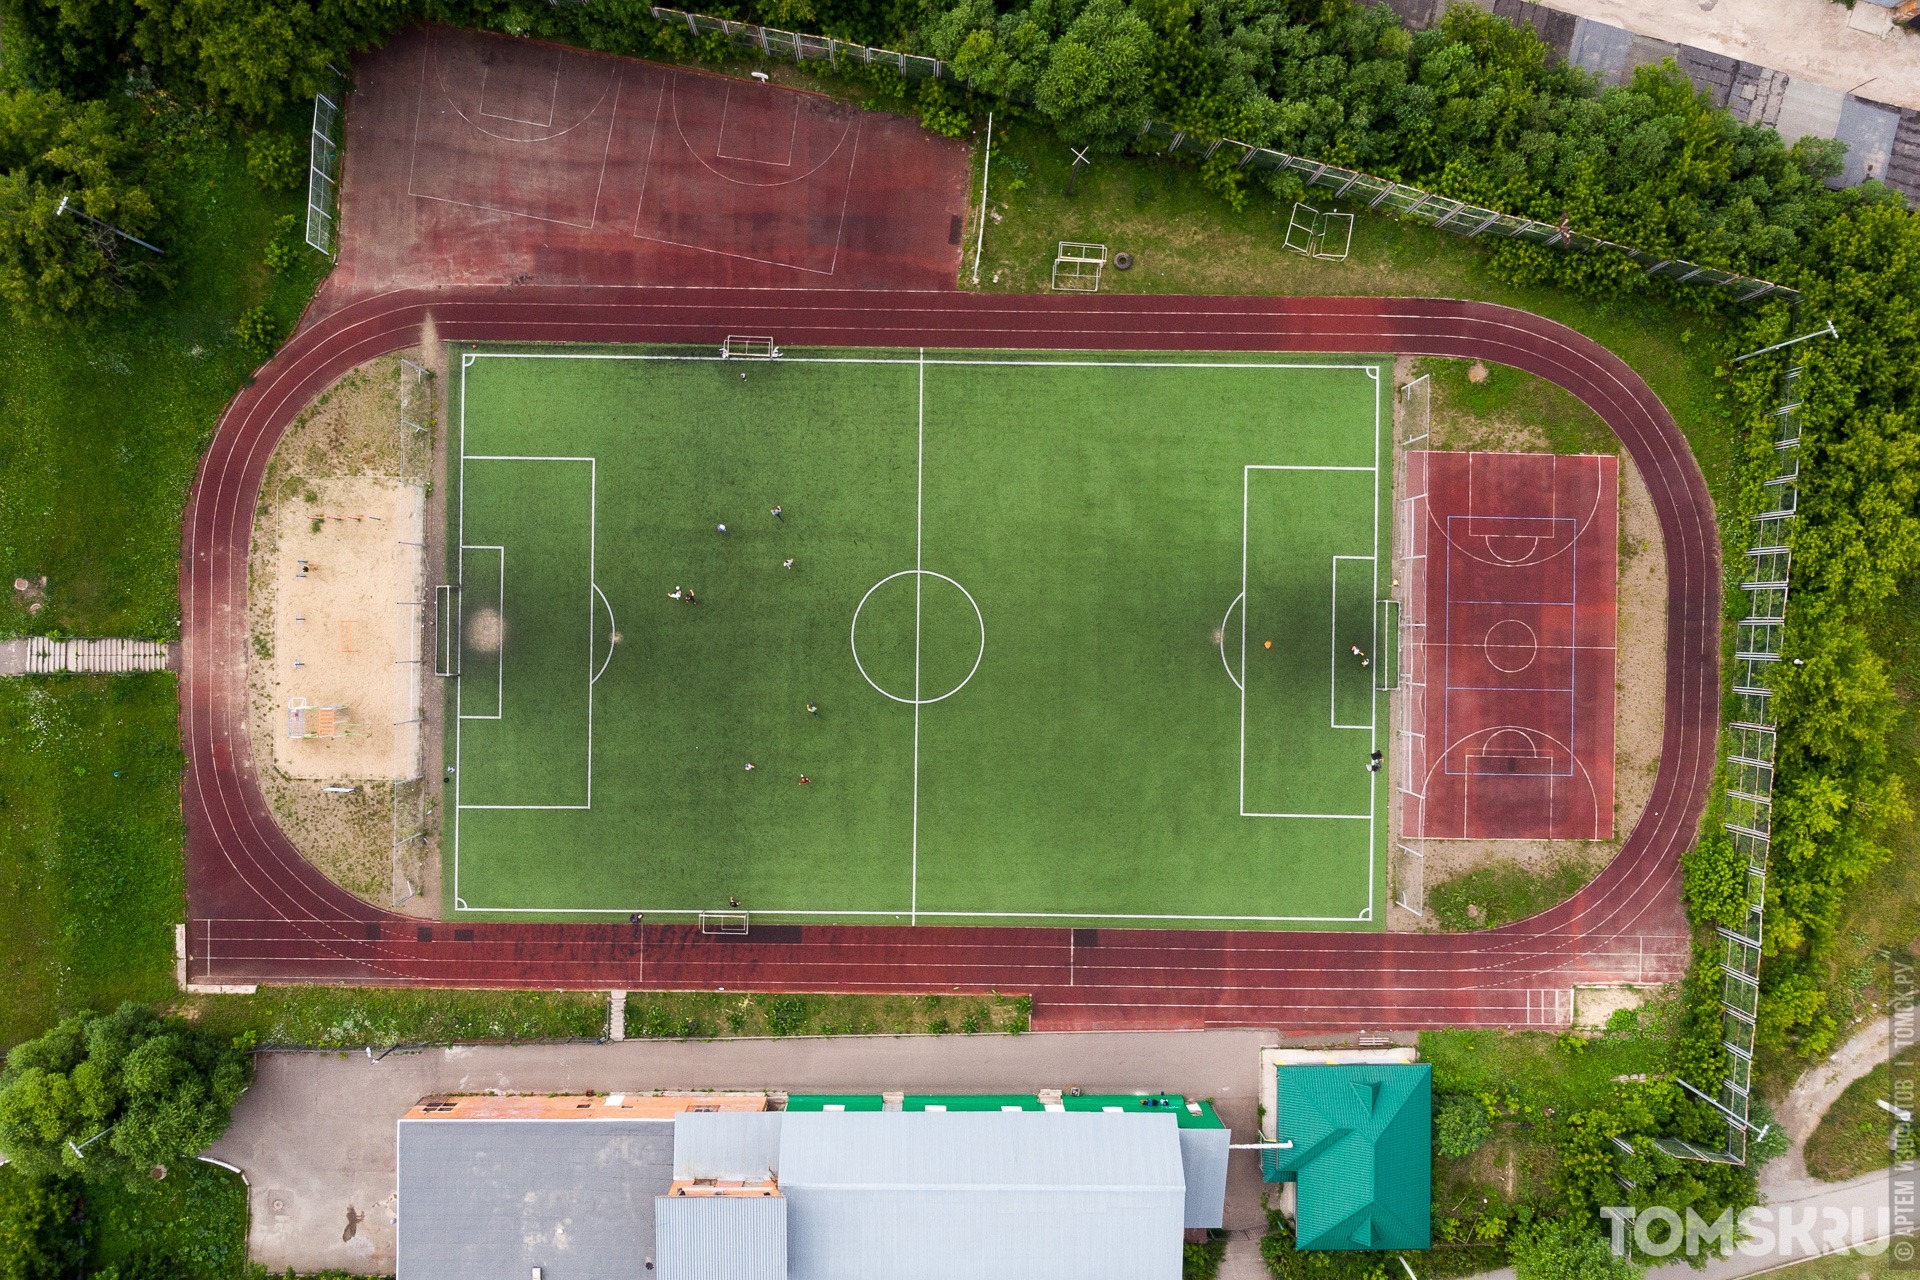 Футбольное поле появится в Михайловской роще в Томске